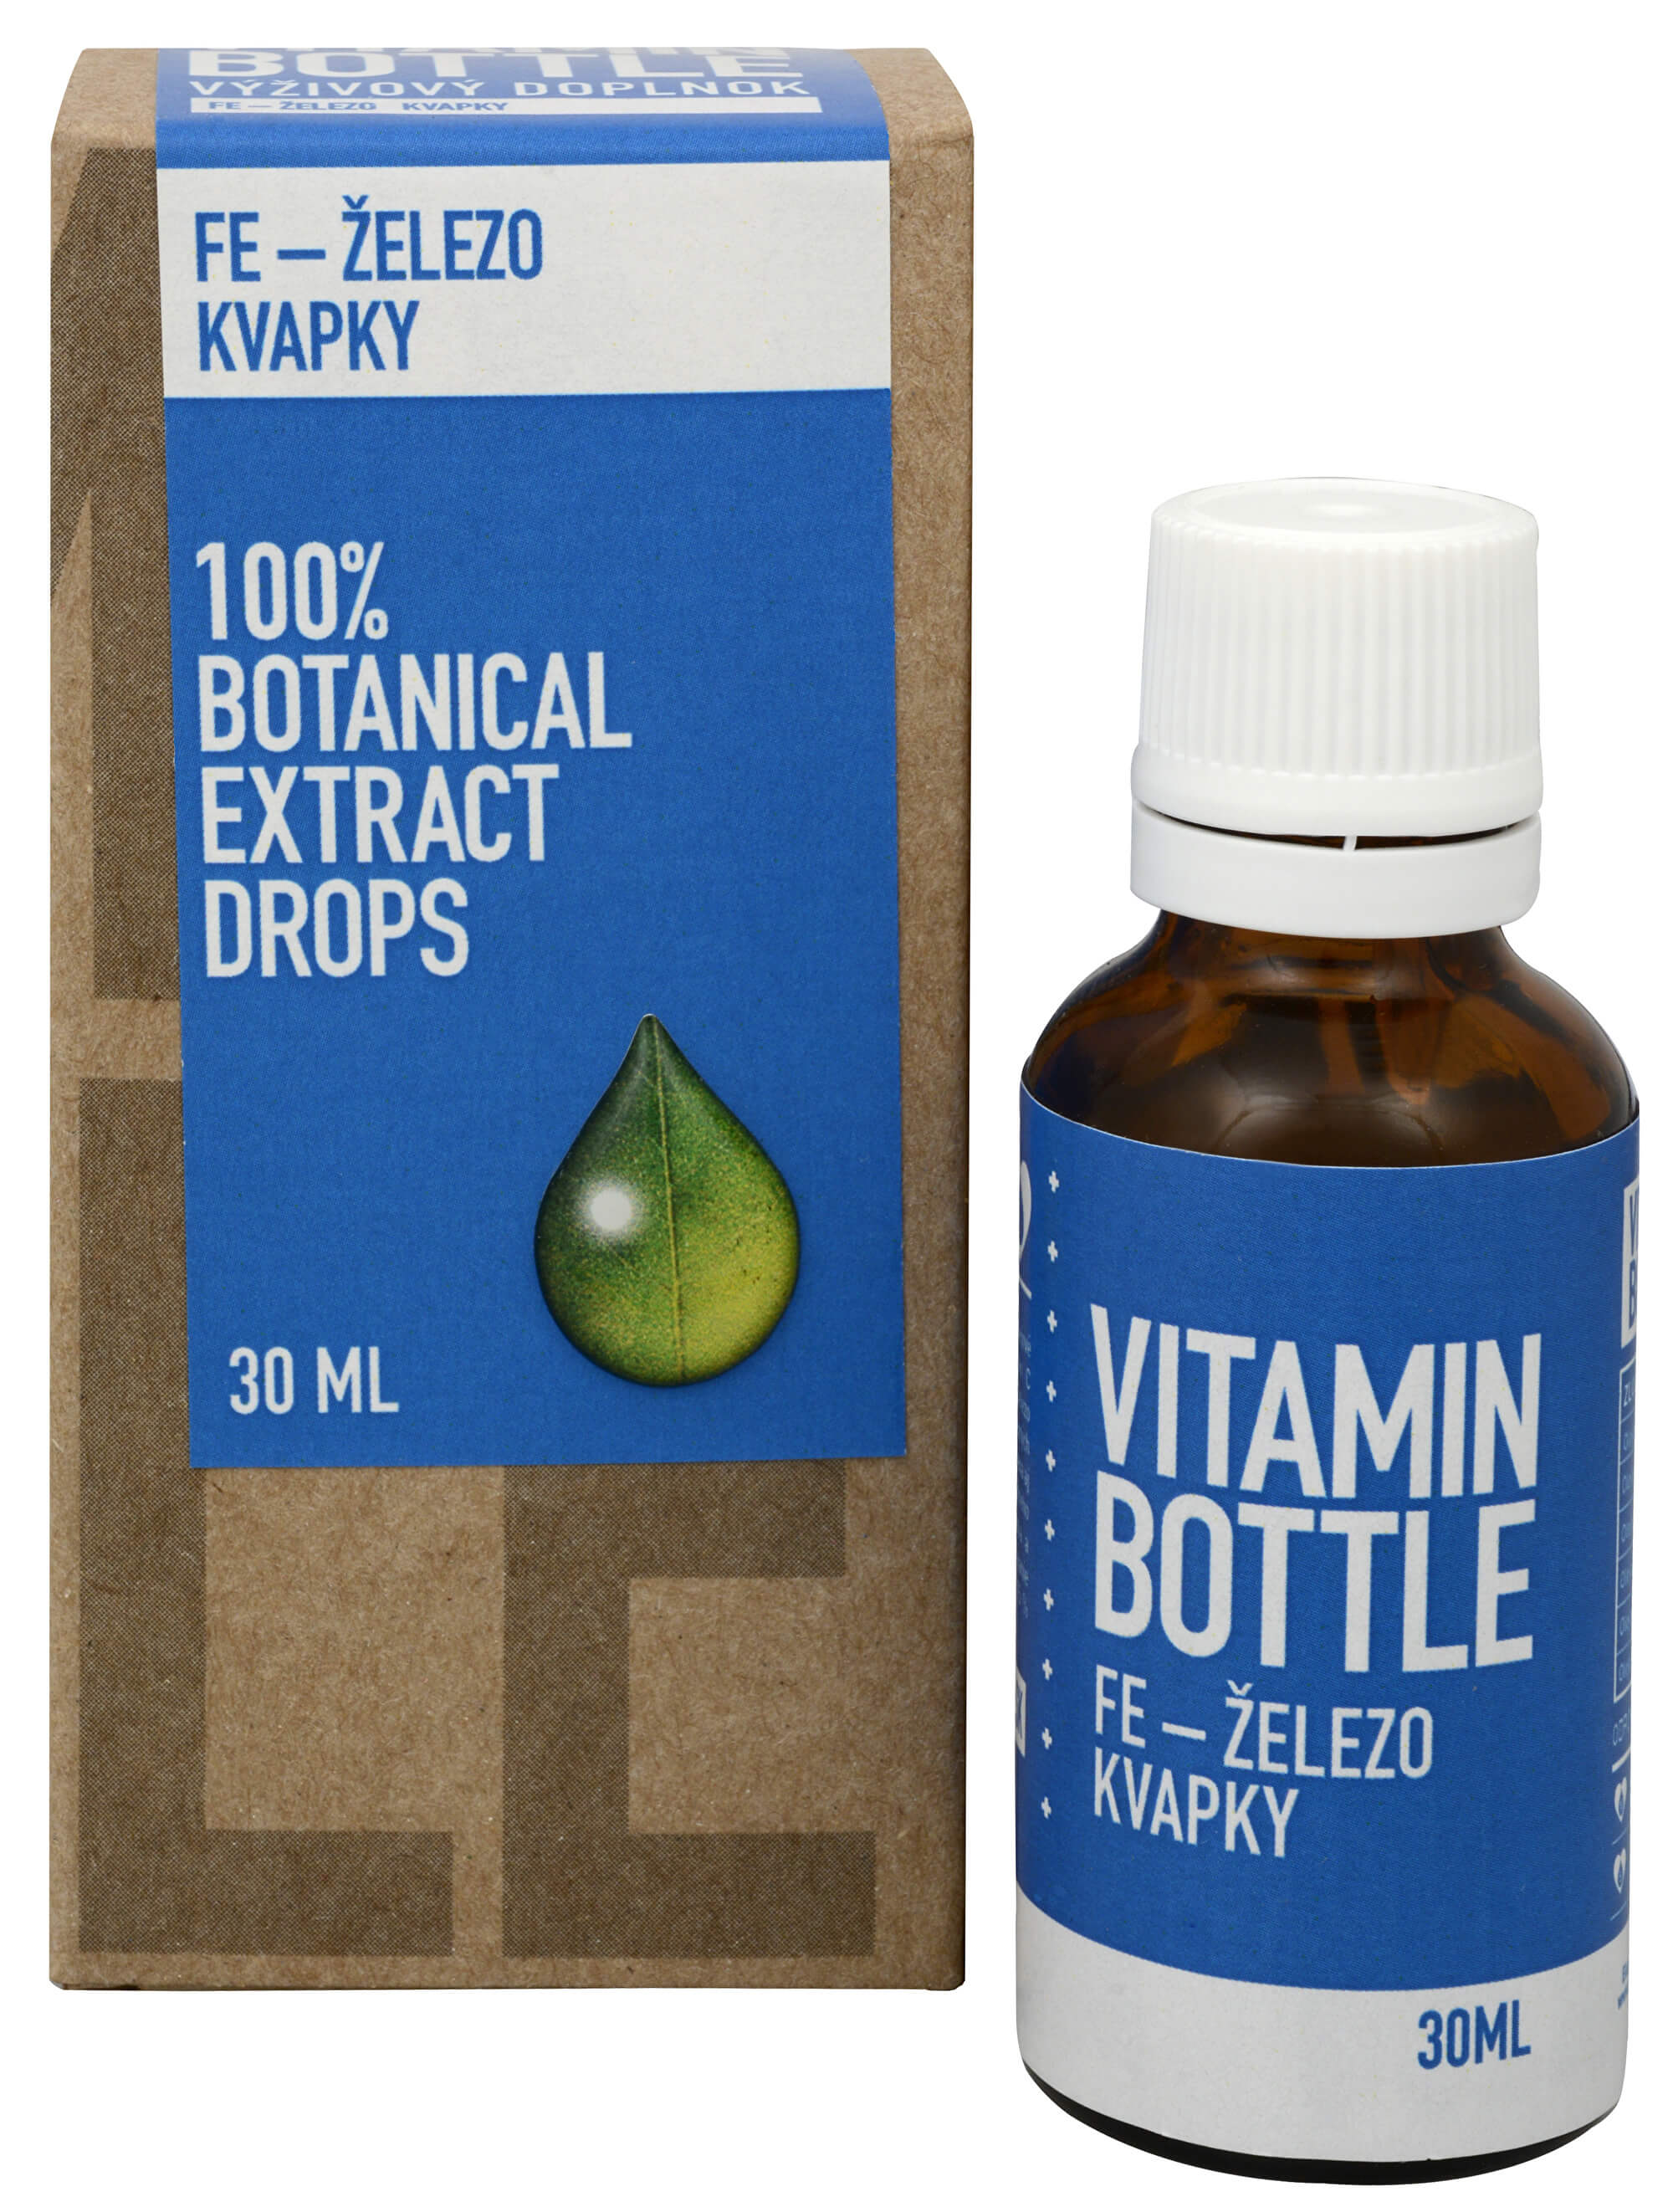 Vitamin Bottle Fe – železo 30 ml